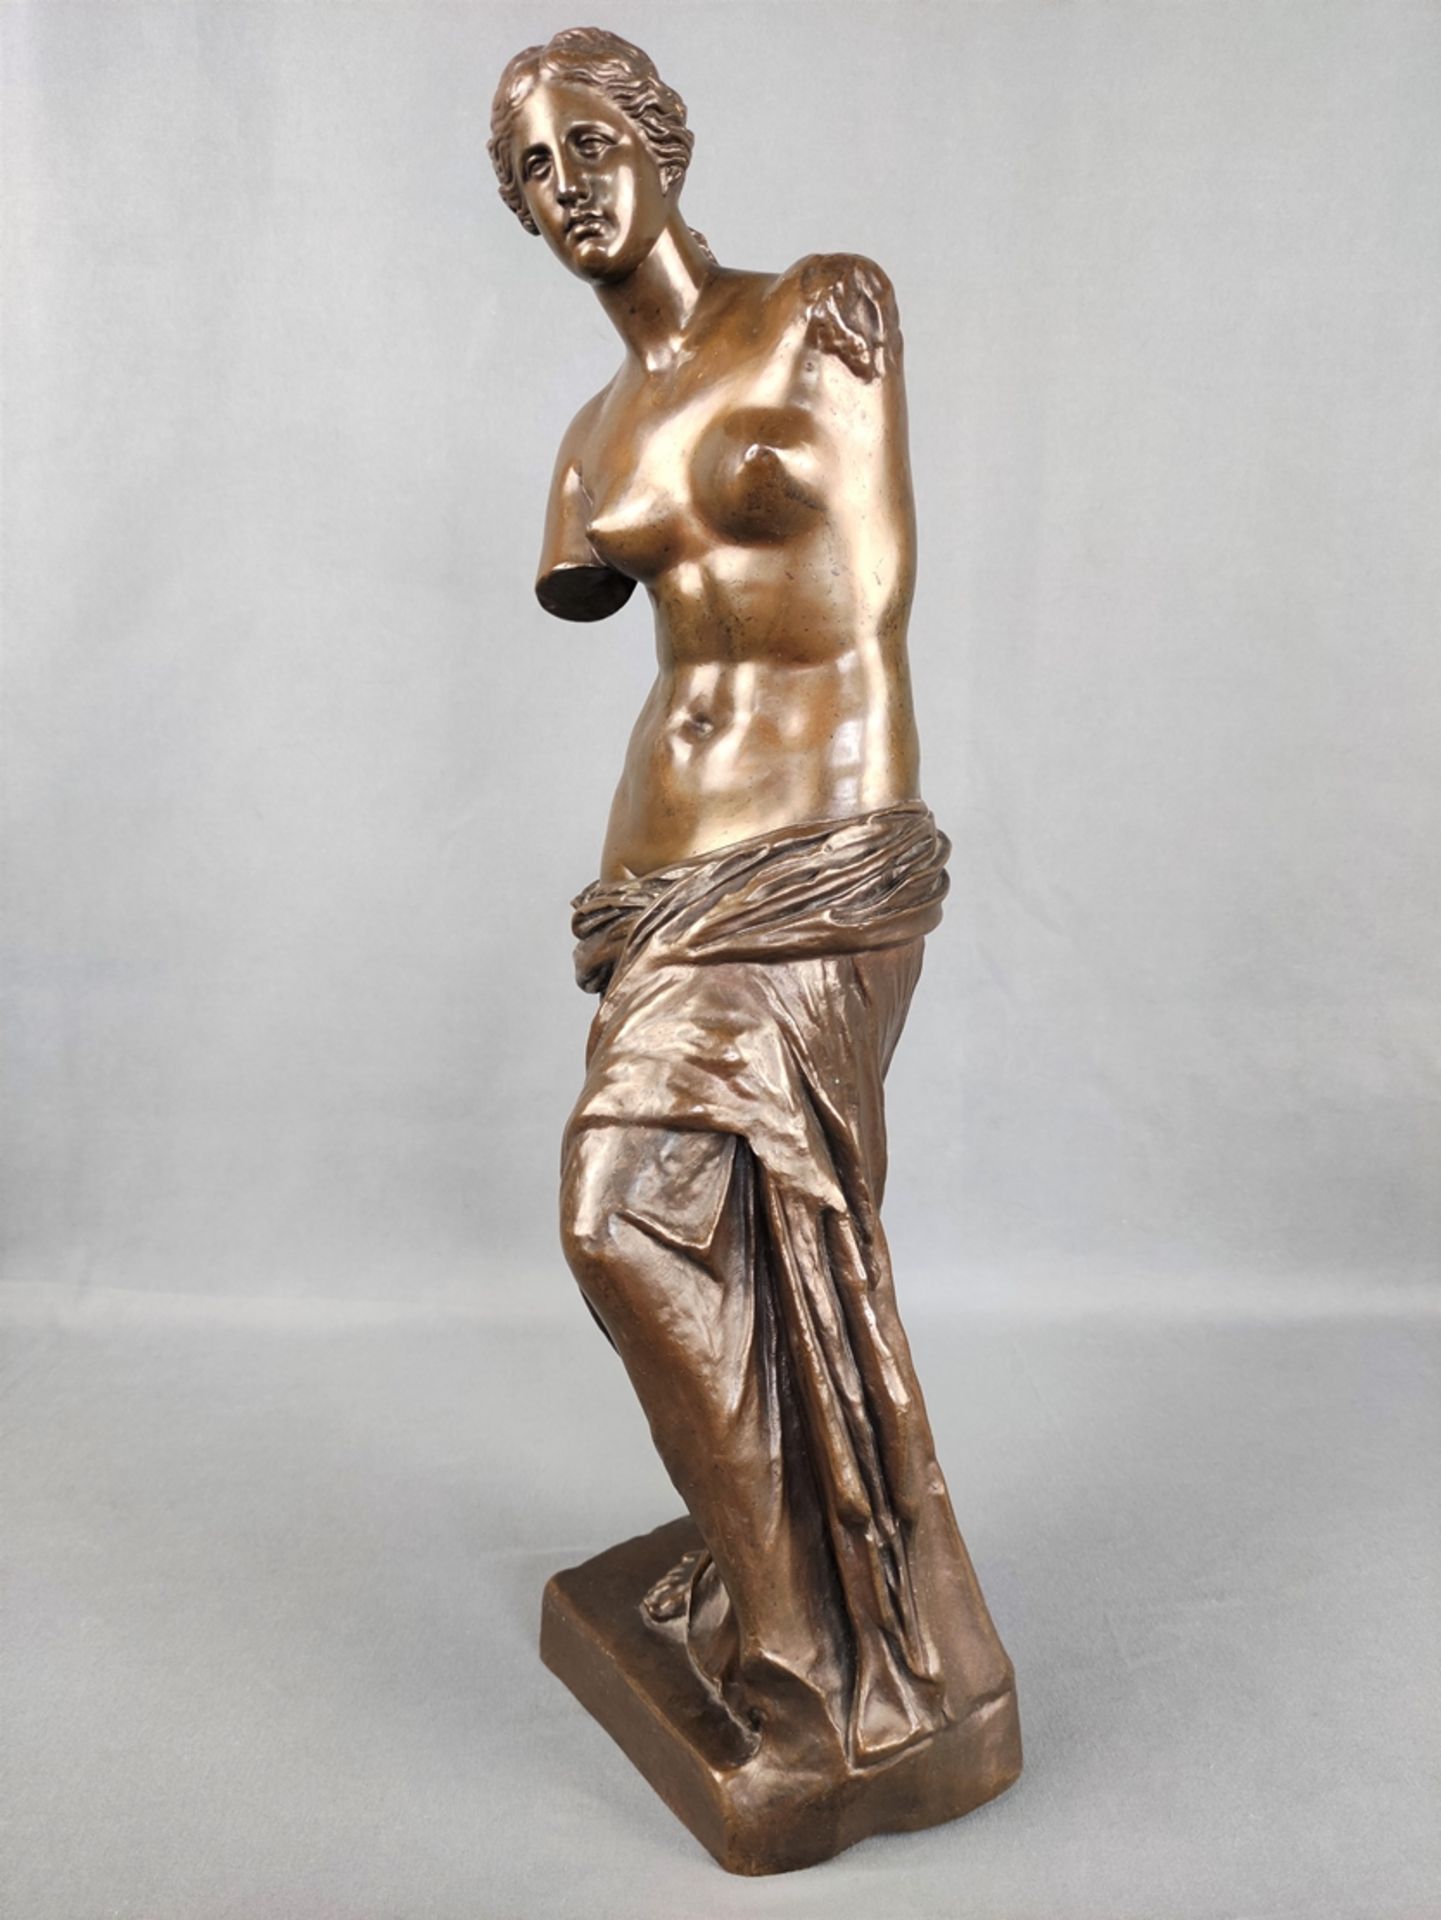 Französischer Künstler (19. Jahrhundert) "Venus von Milo", Bronzeplastik nach dem griechischen Orig - Bild 2 aus 5